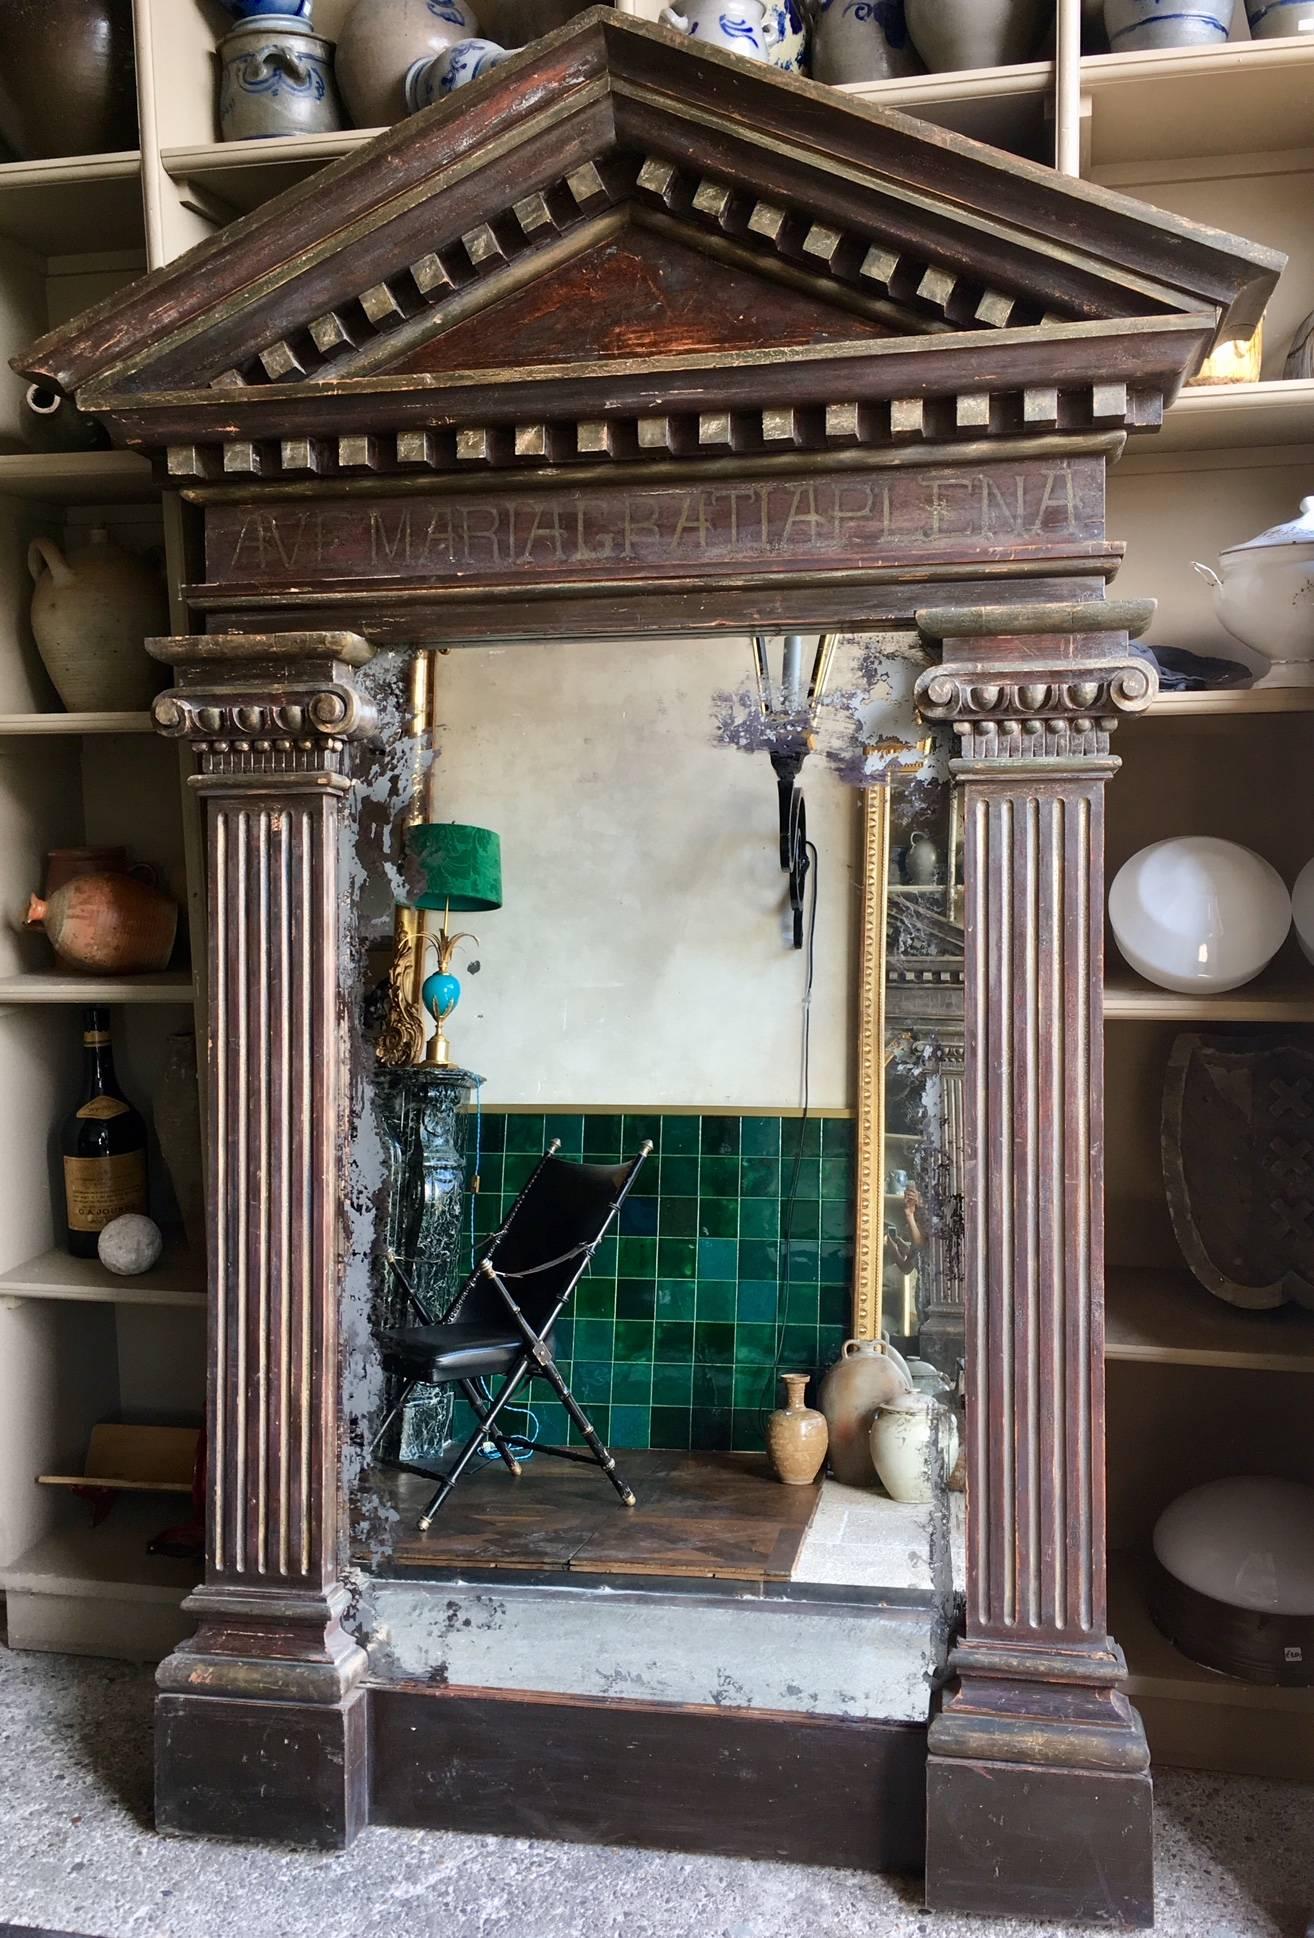 Grand miroir dans un cadre décoratif ancien. Le cadre est décoré d'éléments architecturaux tels qu'un tympan et des pilastres ioniques. Sous le tympan, le texte 